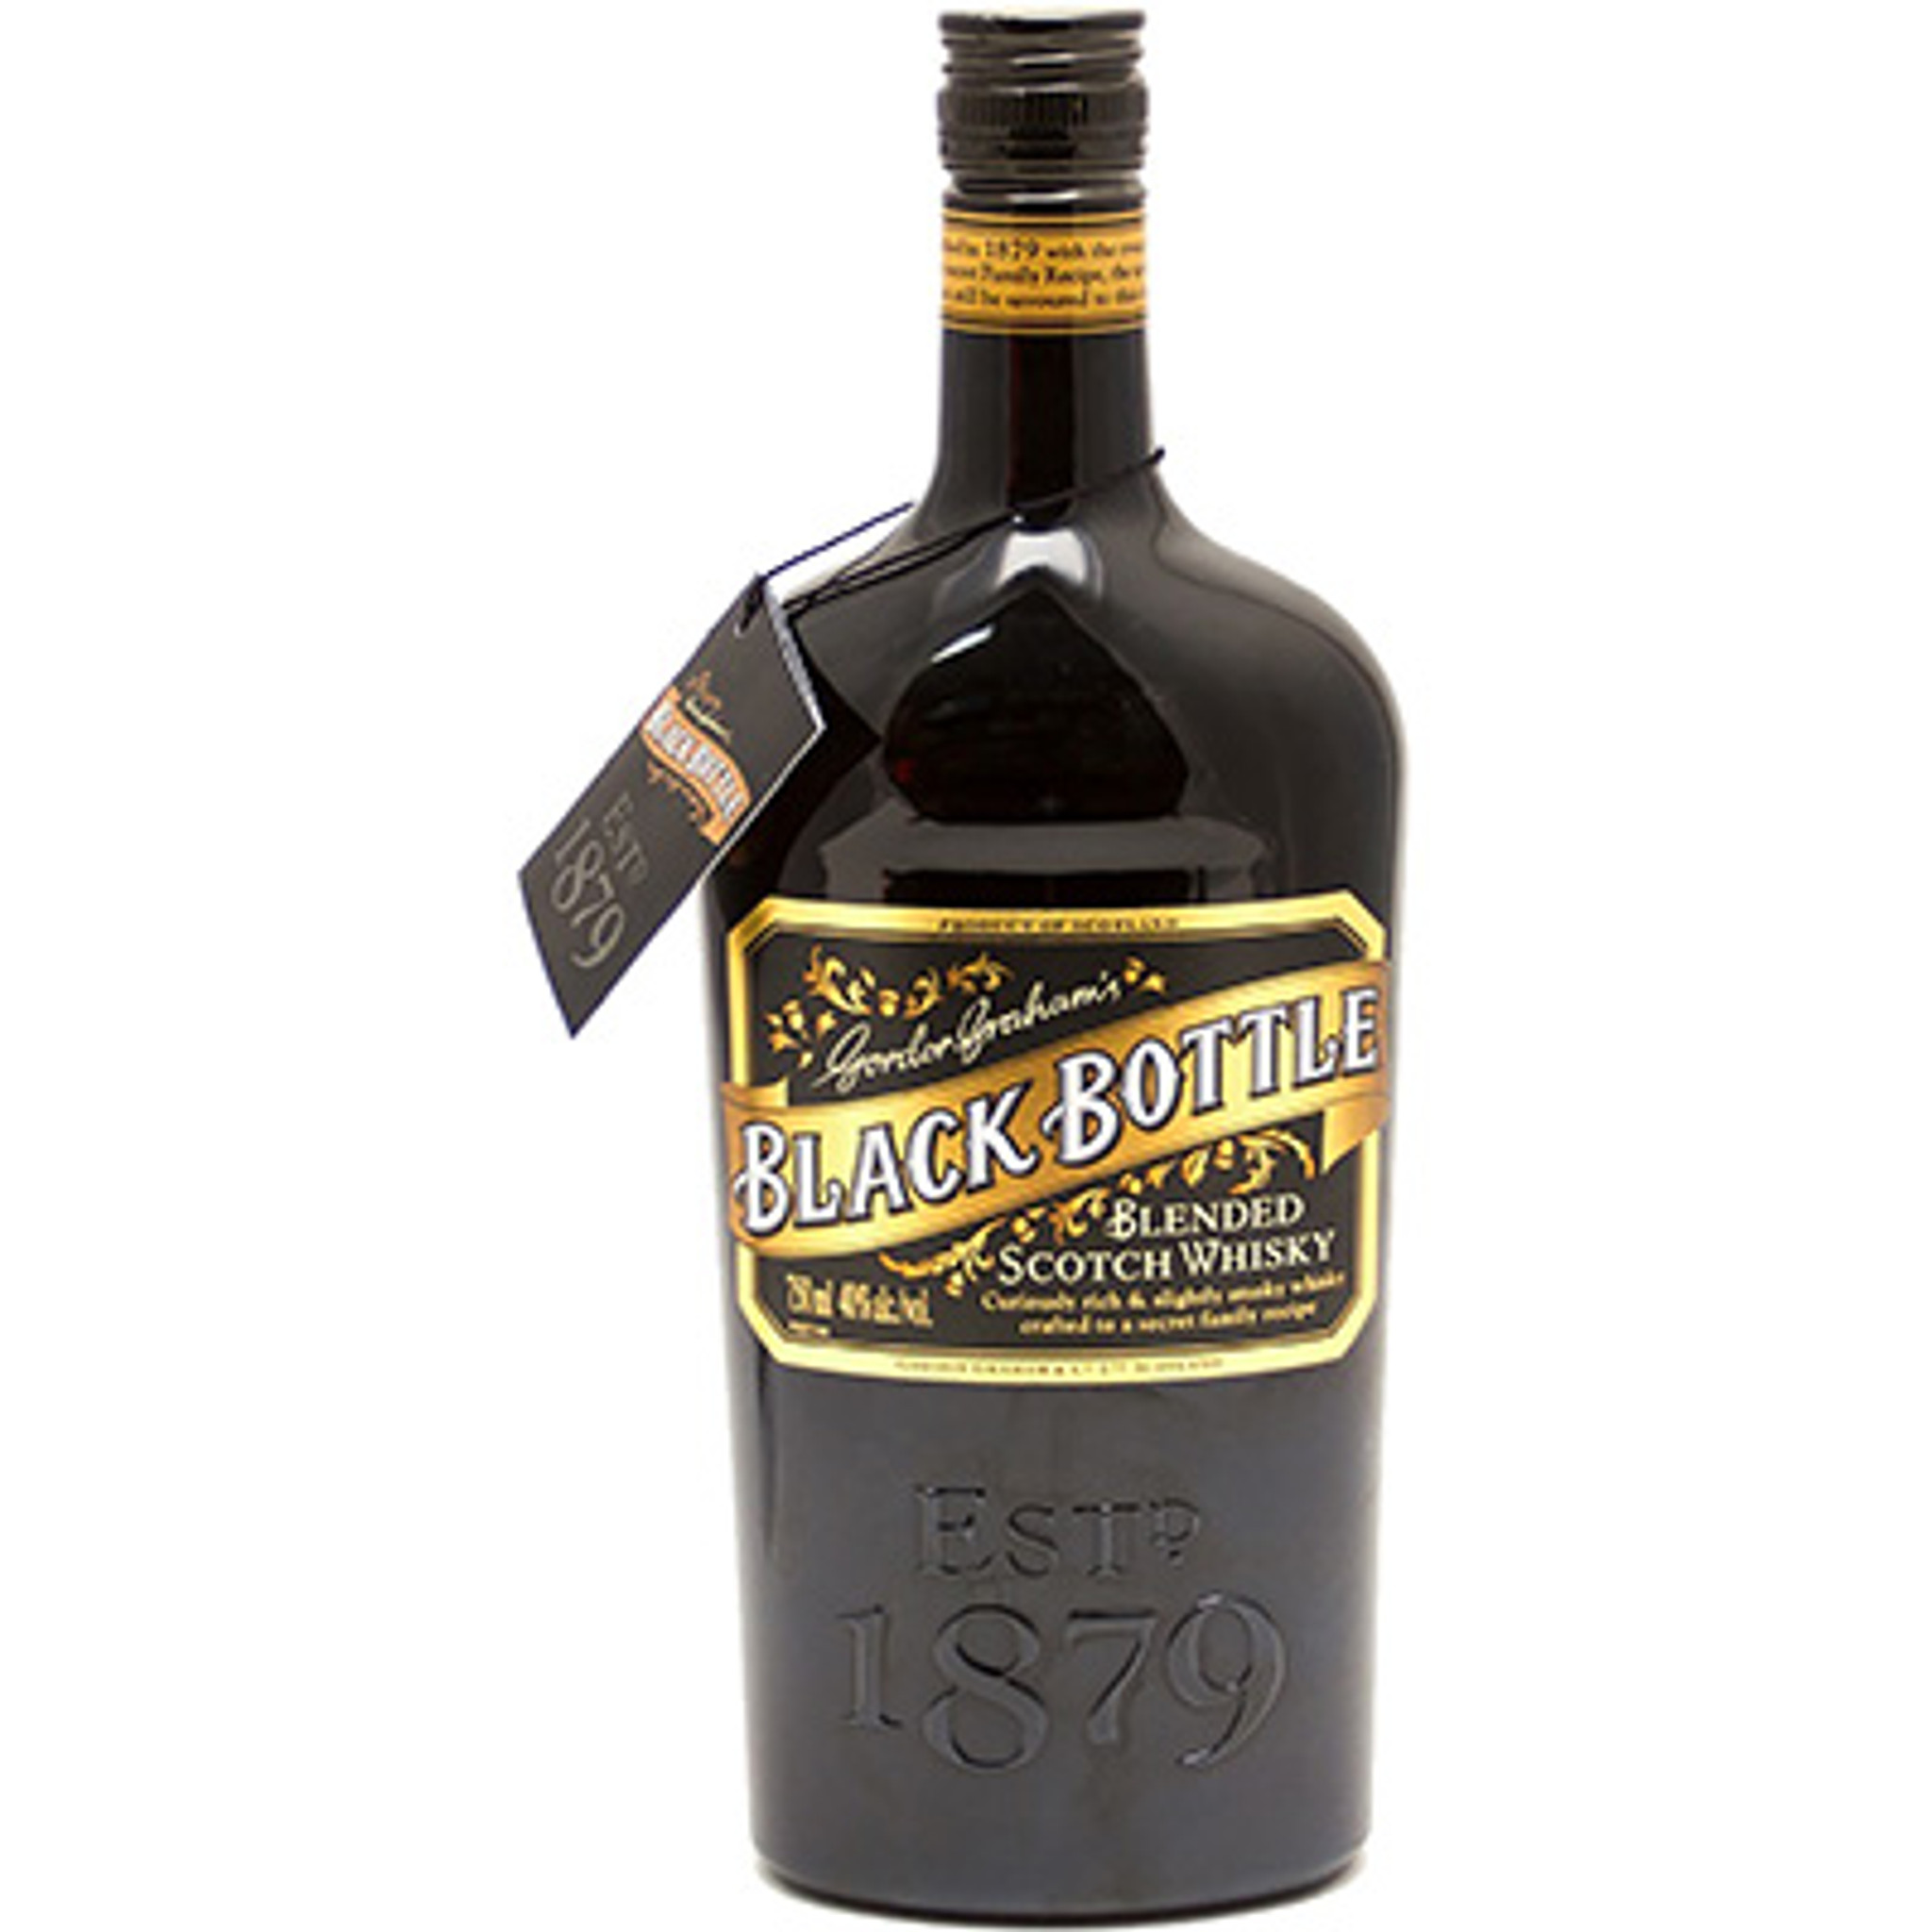 Gordon Graham's Black Bottle Blended Whisky - The House of